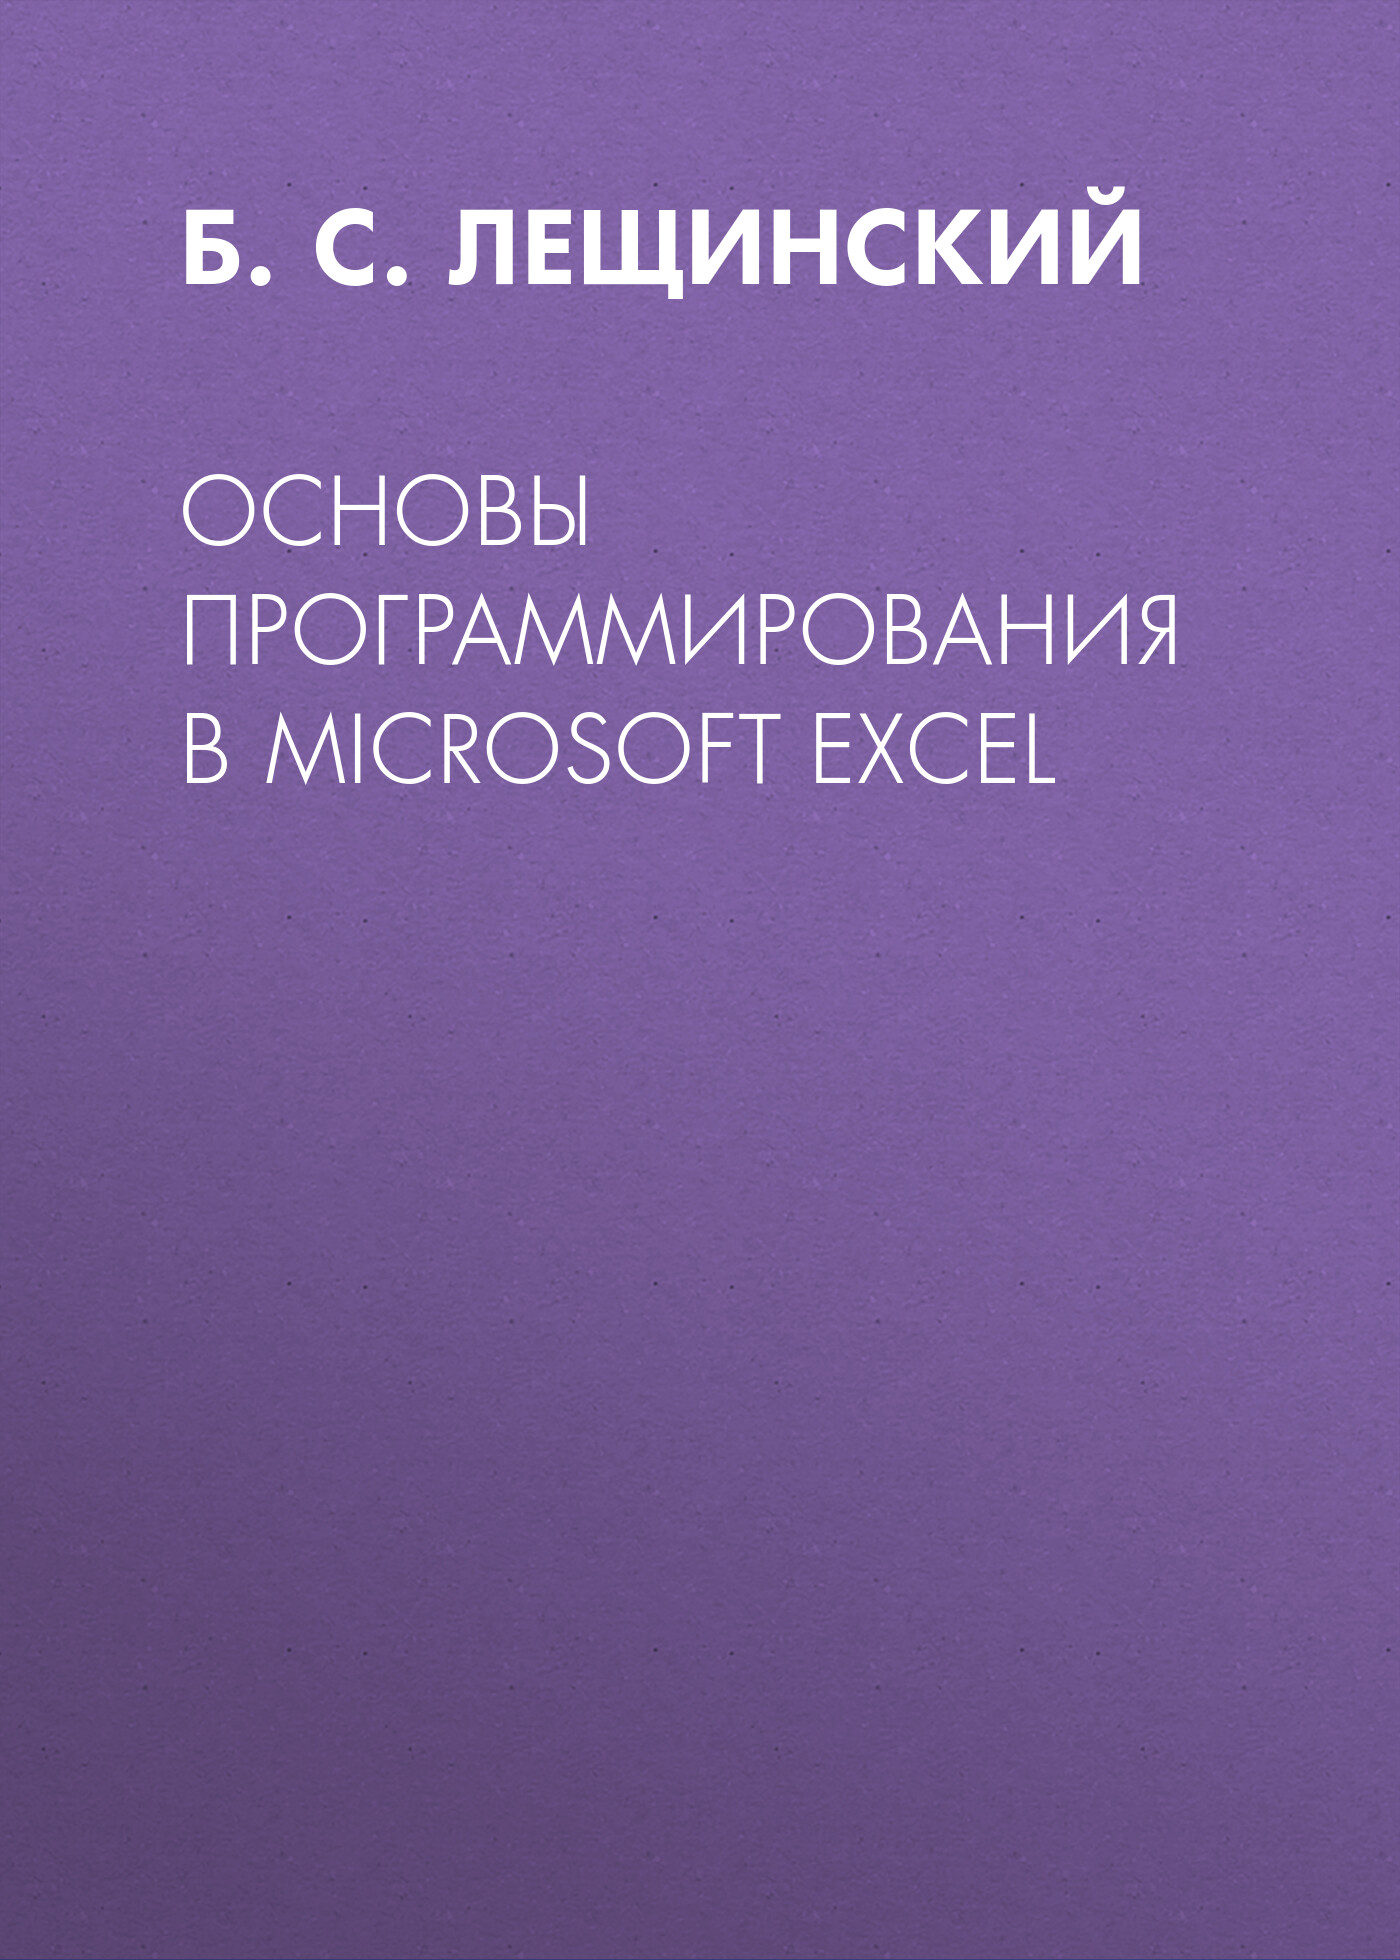 Книга  Основы программирования в Microsoft Excel созданная Б. С. Лещинский может относится к жанру программирование, учебно-методические пособия. Стоимость электронной книги Основы программирования в Microsoft Excel с идентификатором 67250825 составляет 149.00 руб.